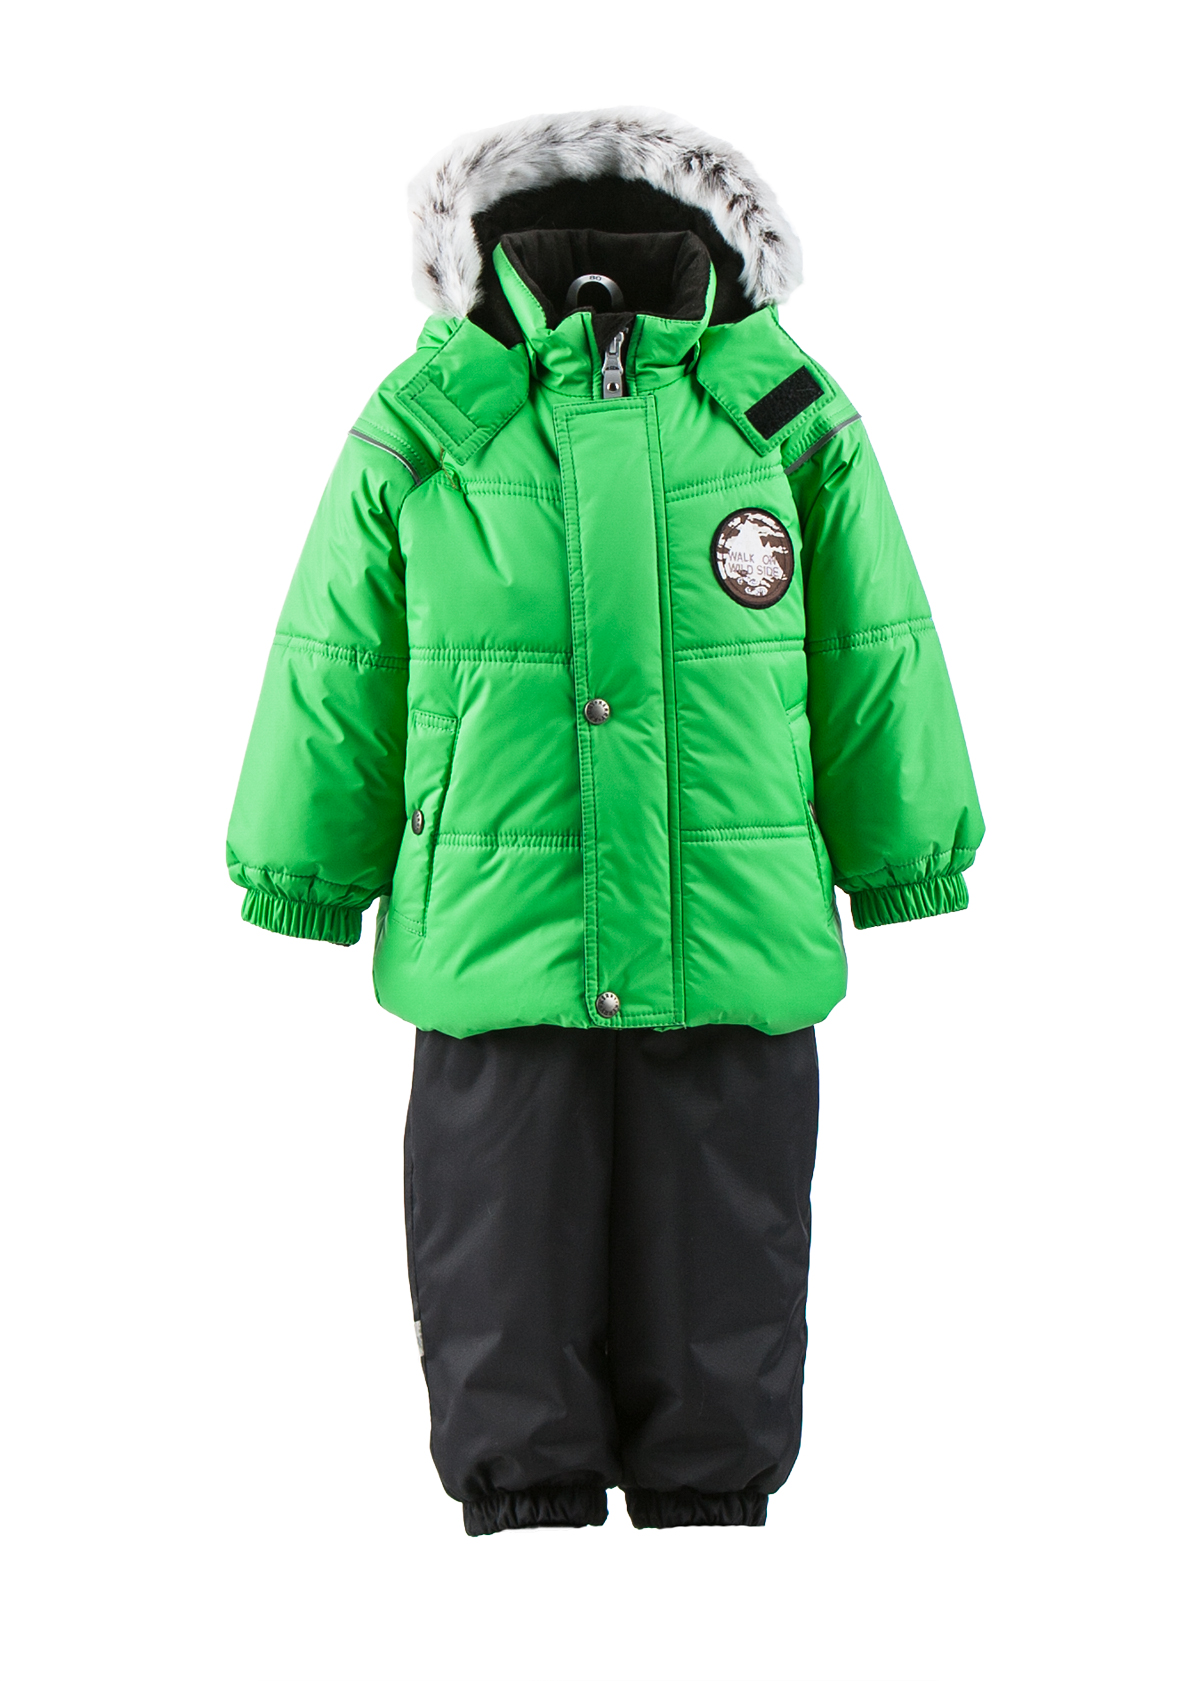 Комплект верхней одежды детский KERRY K18417 цв. зеленый р. 80